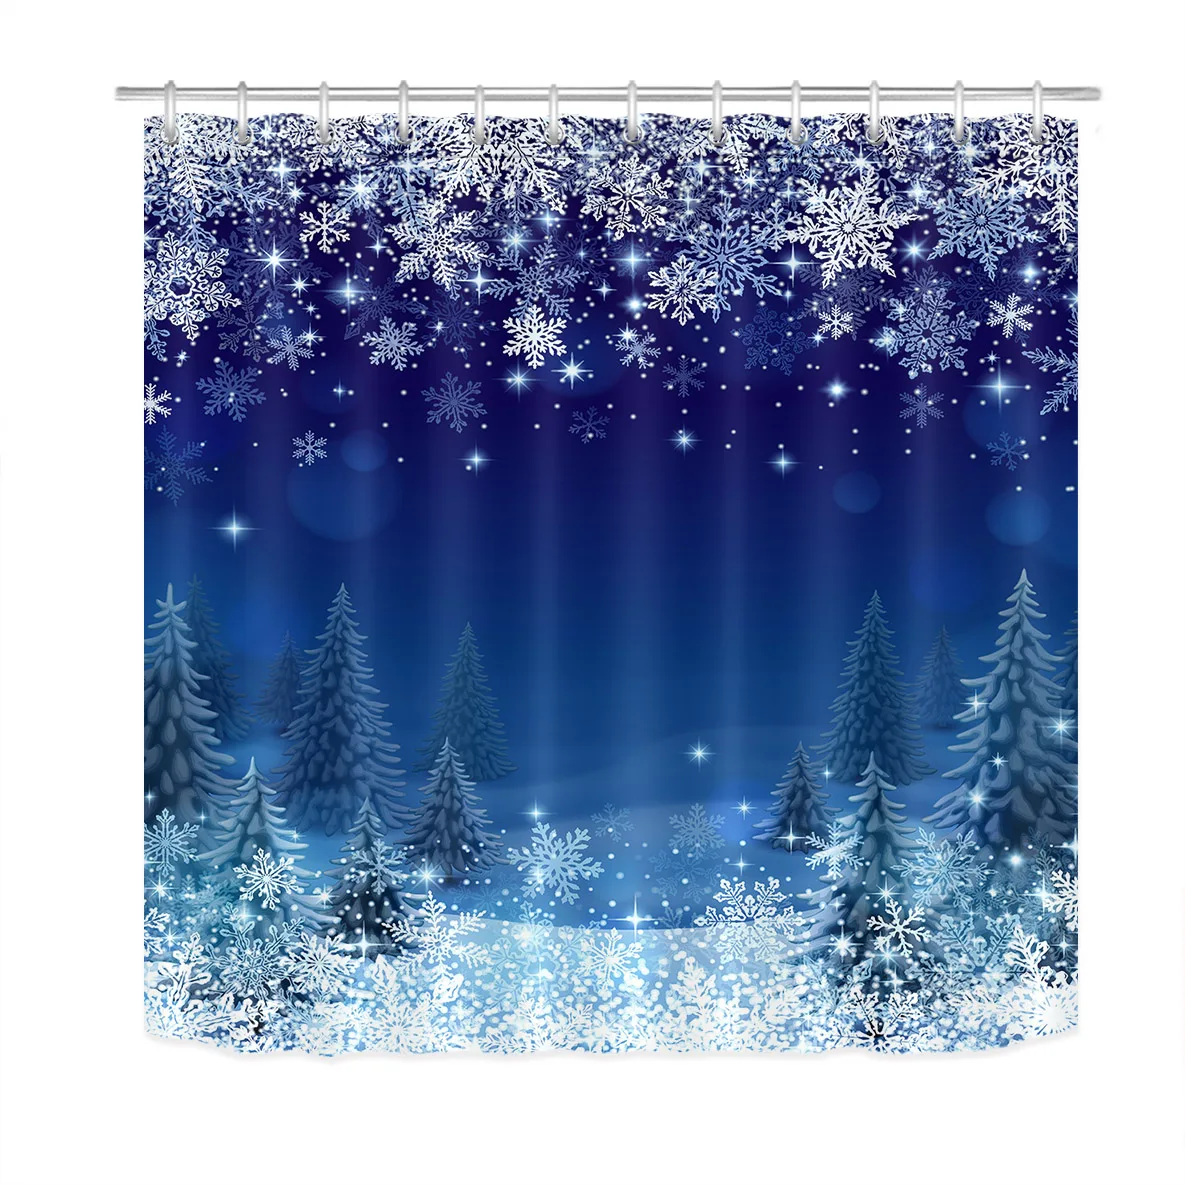 В скандинавском стиле, Рождественская Снежинка, деревья, занавеска для душа, занавеска для ванной, ткань, защита от плесени, водонепроницаемая занавеска или нескользящая дверь